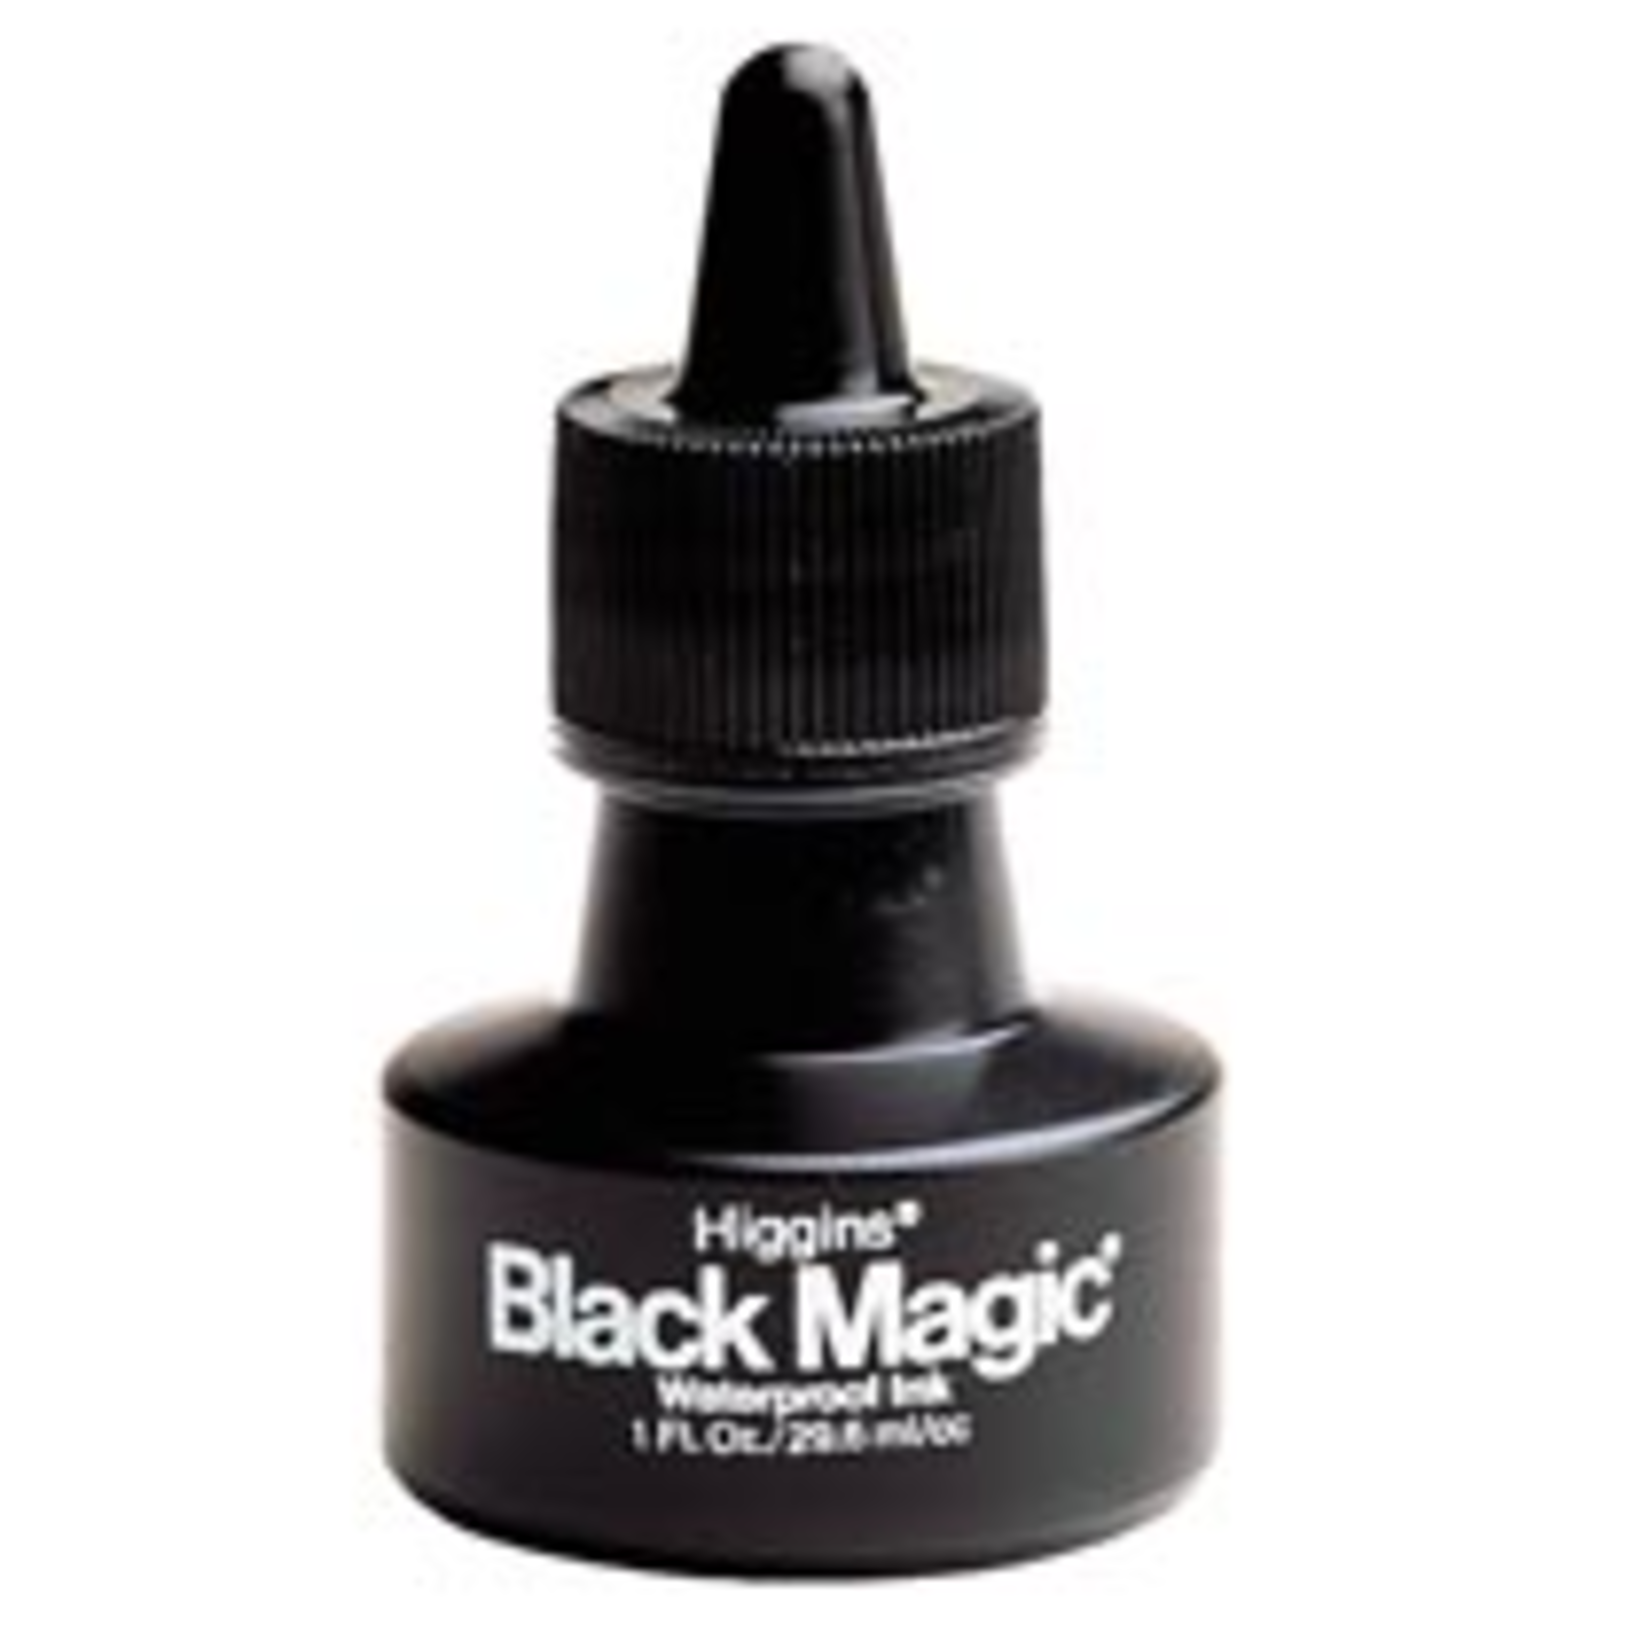 HIGGINS HIGGINS BLACK MAGIC WATERPROOF INK BLACK